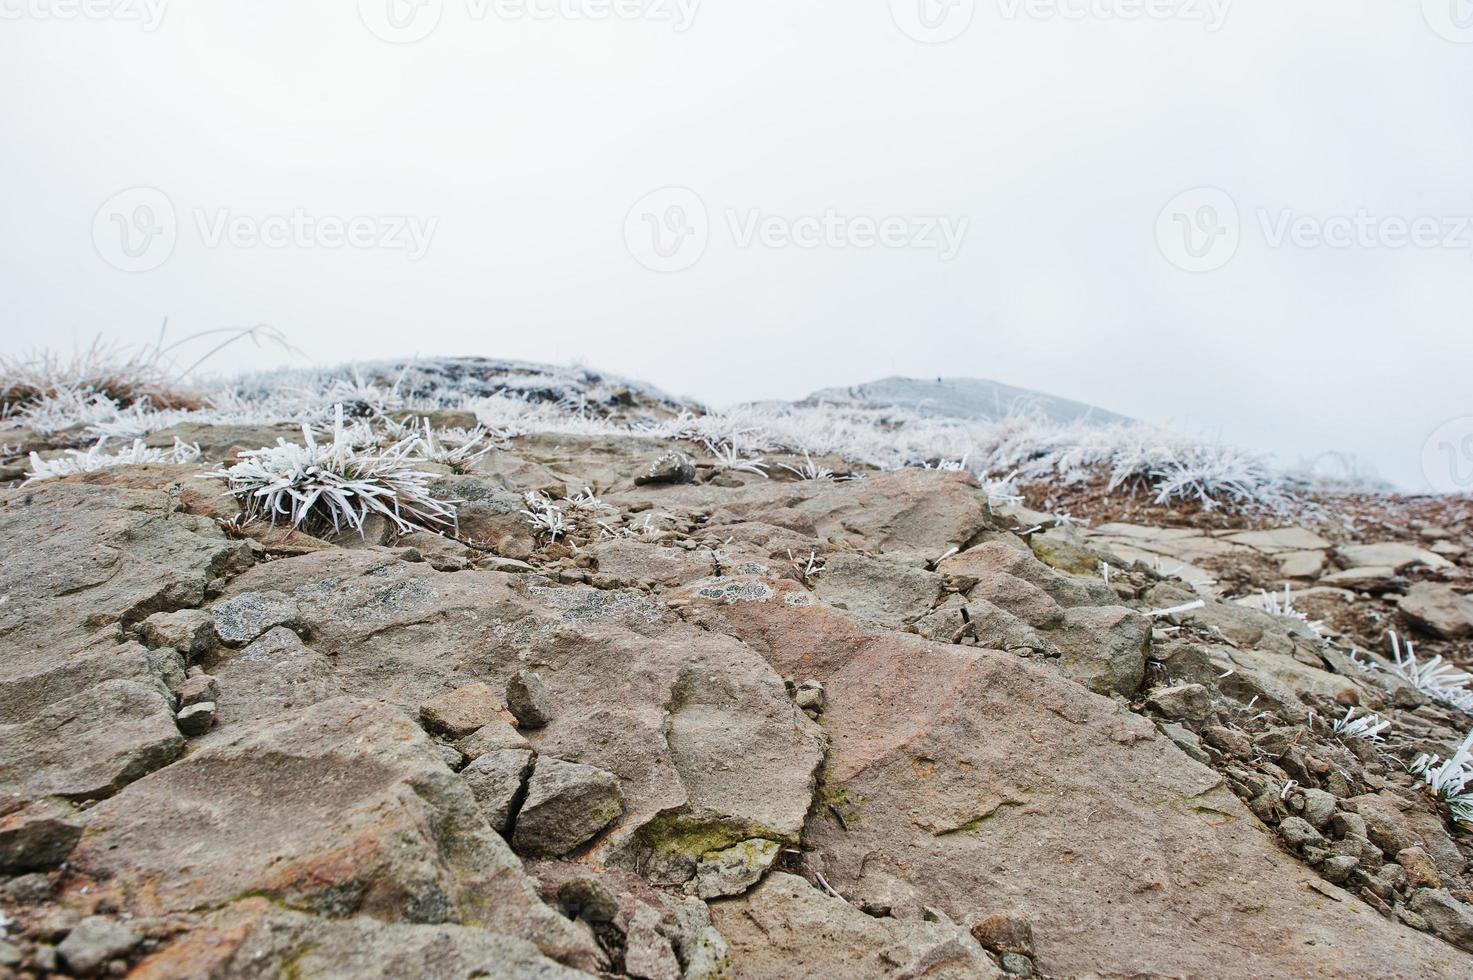 bevroren rotsachtige stenen bij sneeuwbergen met vorstgras en mist erop foto